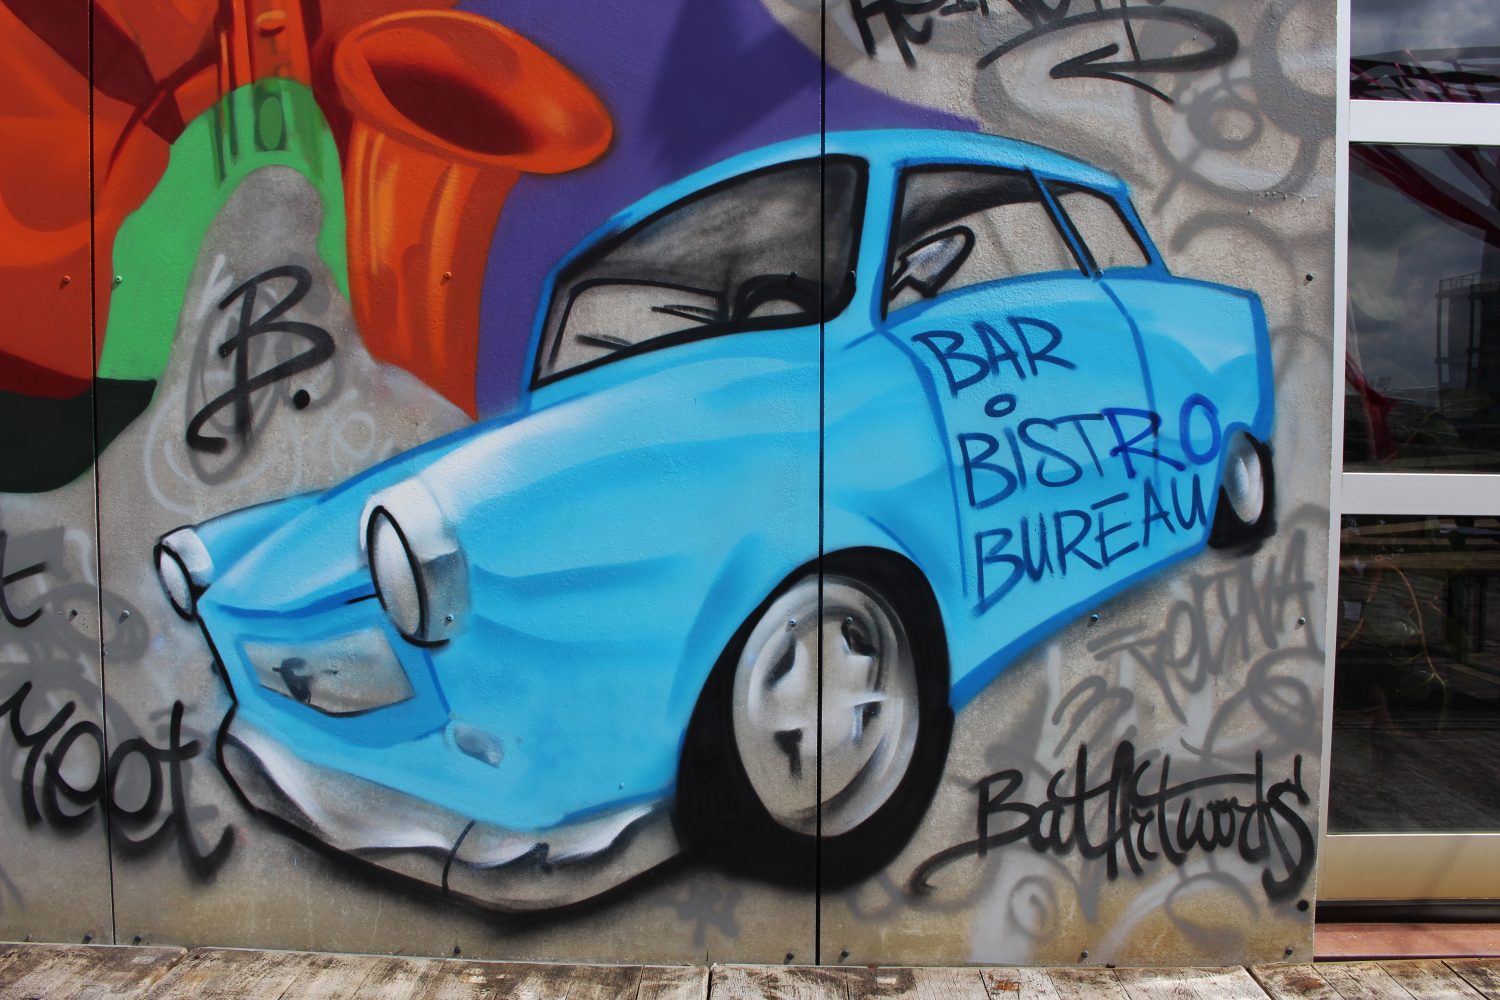 Dakterras street art mural - Heineken x Bar Bistro Bureau-01